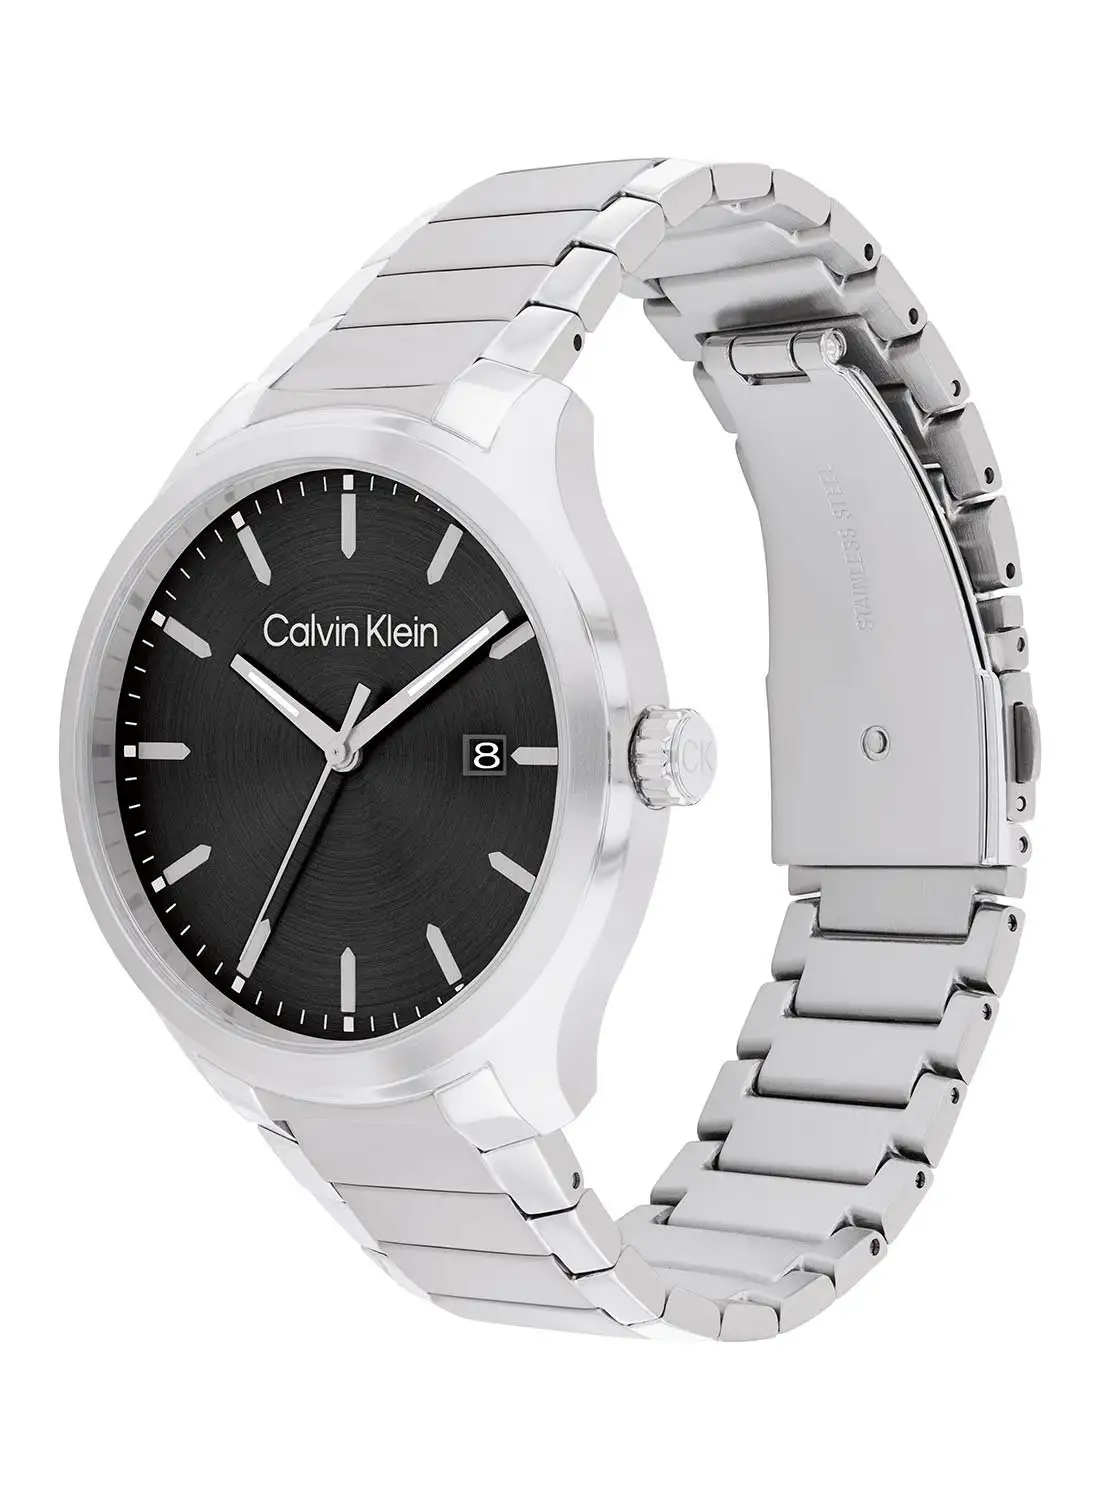 CALVIN KLEIN Men's Analog Round Shape Stainless Steel Wrist Watch 25200348 - 43 Mm